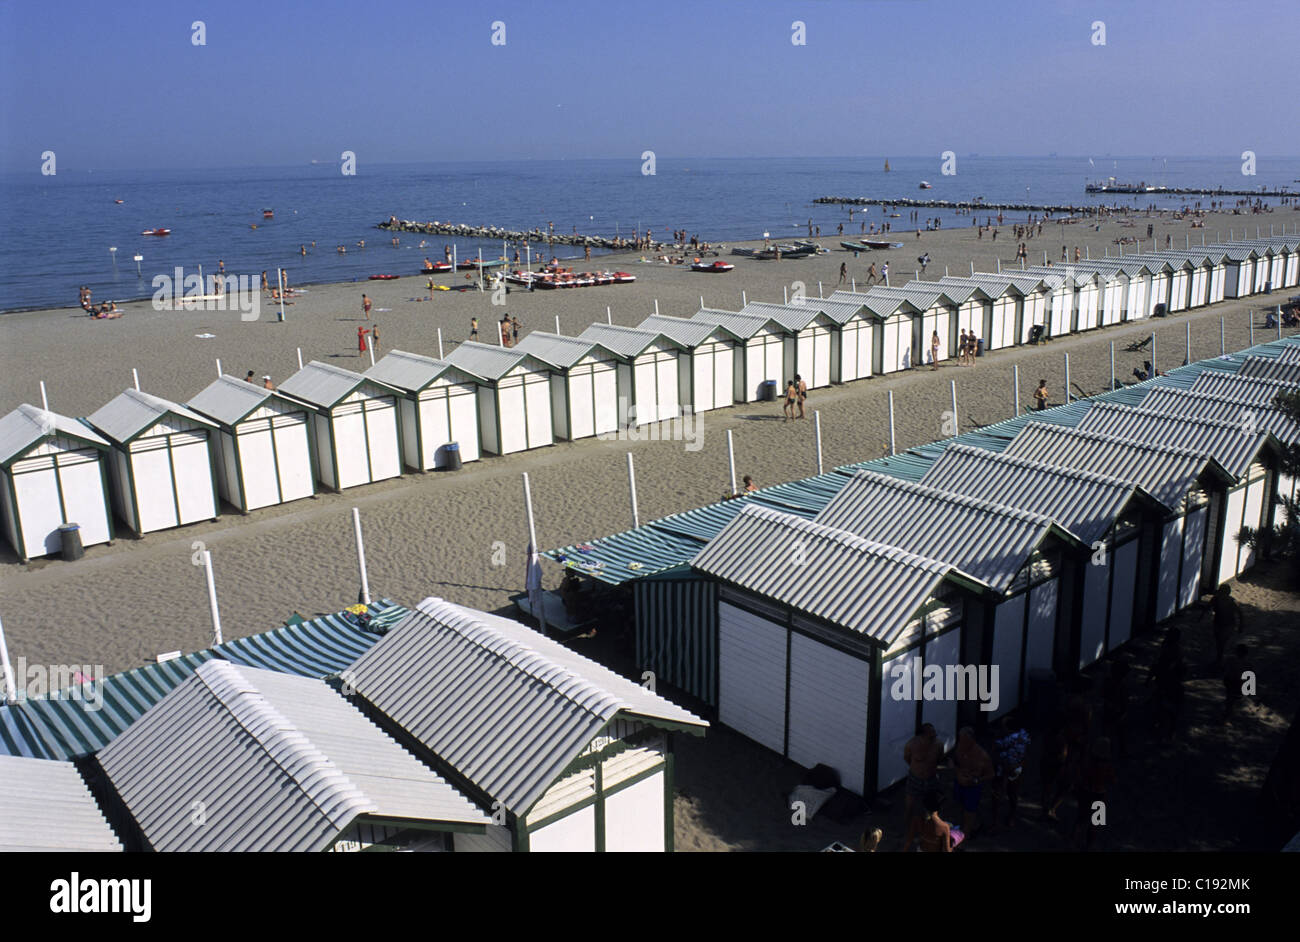 Italy, Veneto, Venice, Lido Island, Grand Hotel beach Stock Photo